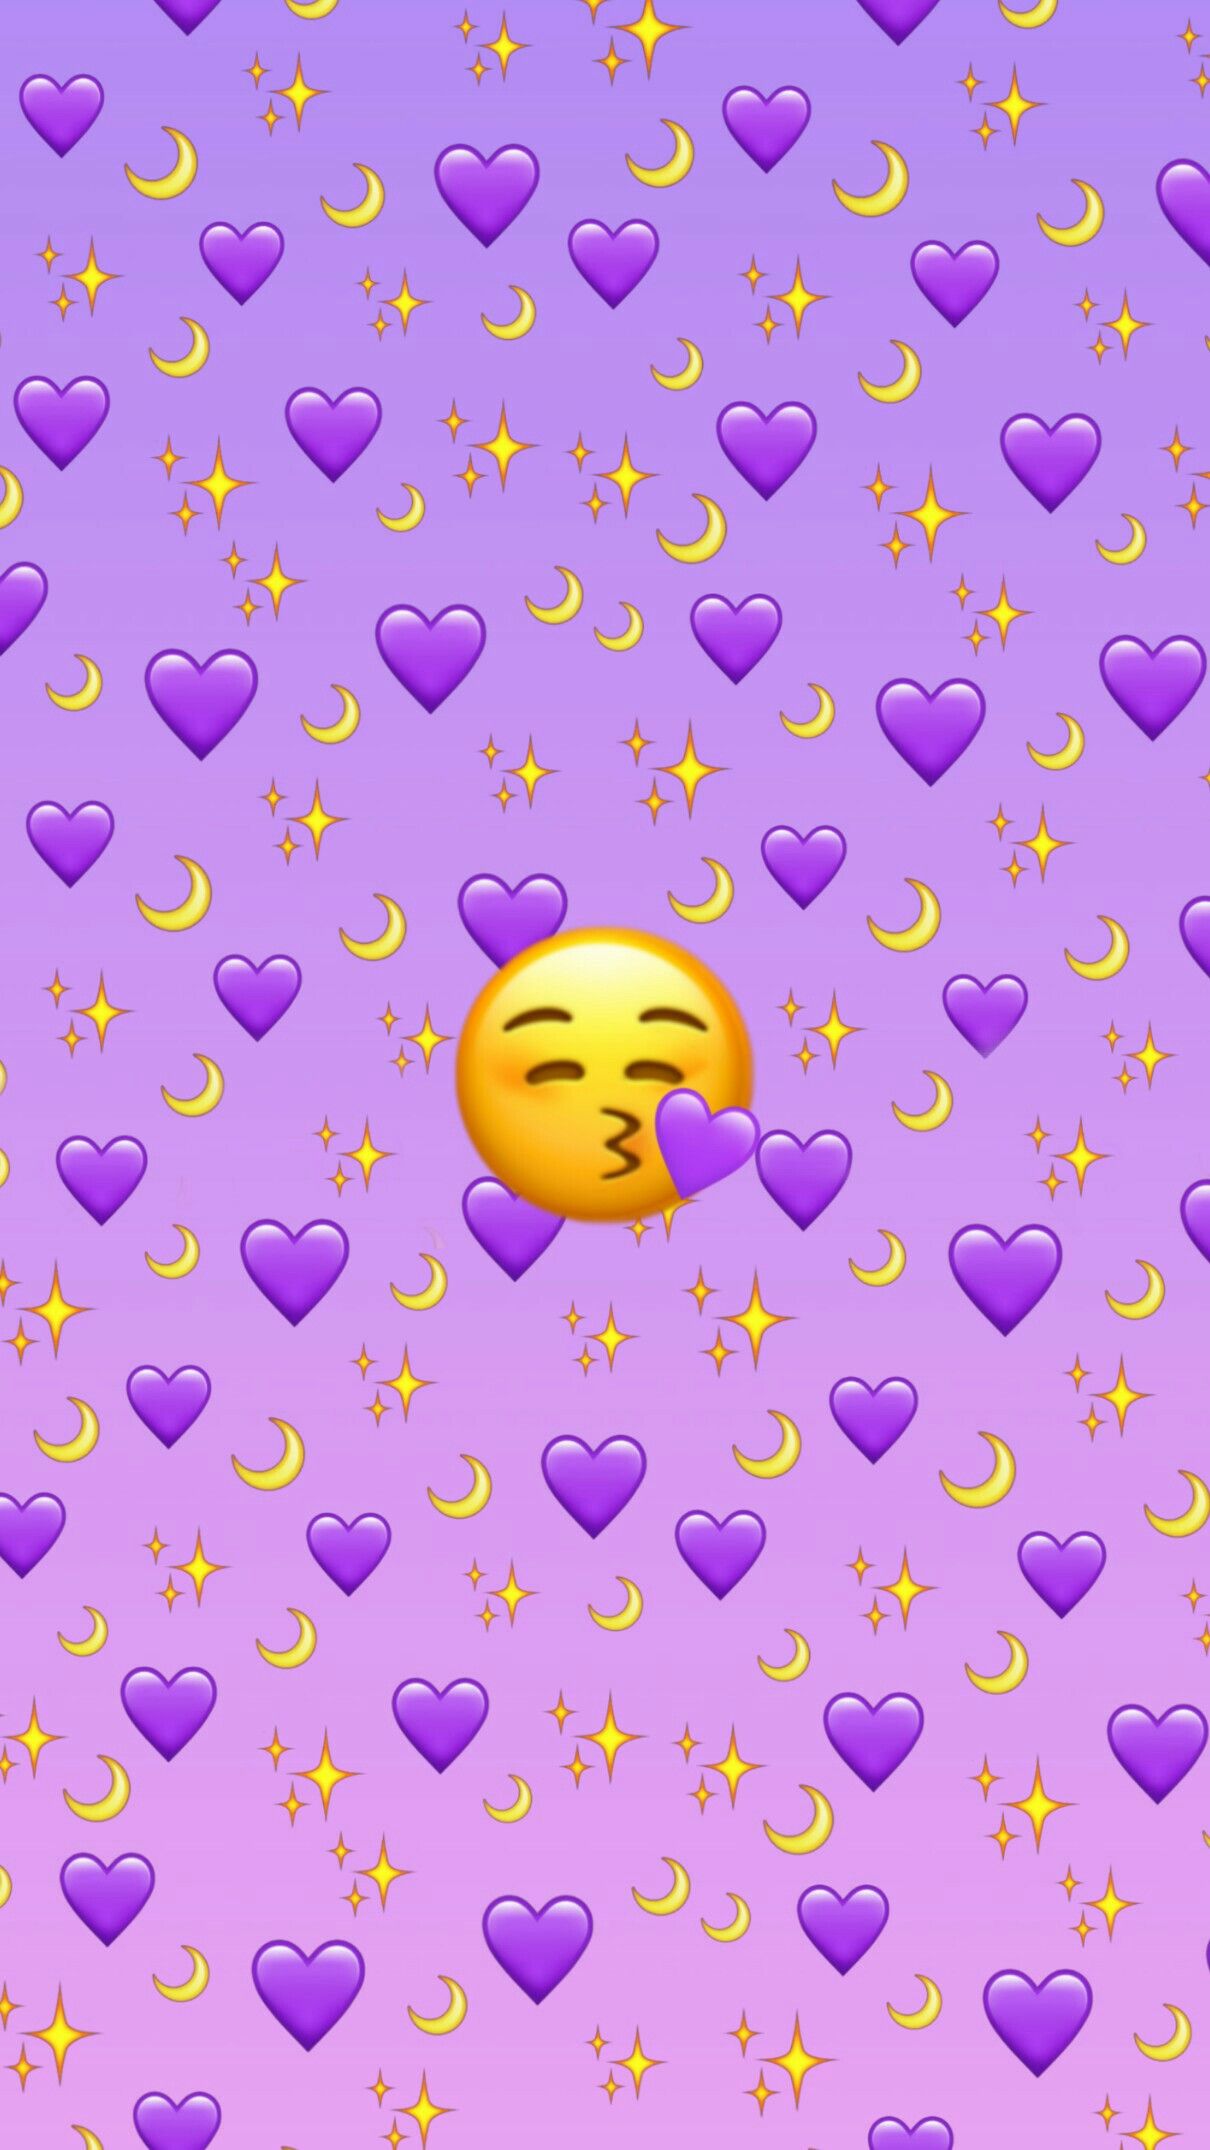 Hình nền Emoji với màu sắc tươi vui, hình ảnh đáng yêu sẽ mang lại niềm vui cho điện thoại của bạn. Hãy cùng xem những hình nền Emoji đầy thú vị này nhé!